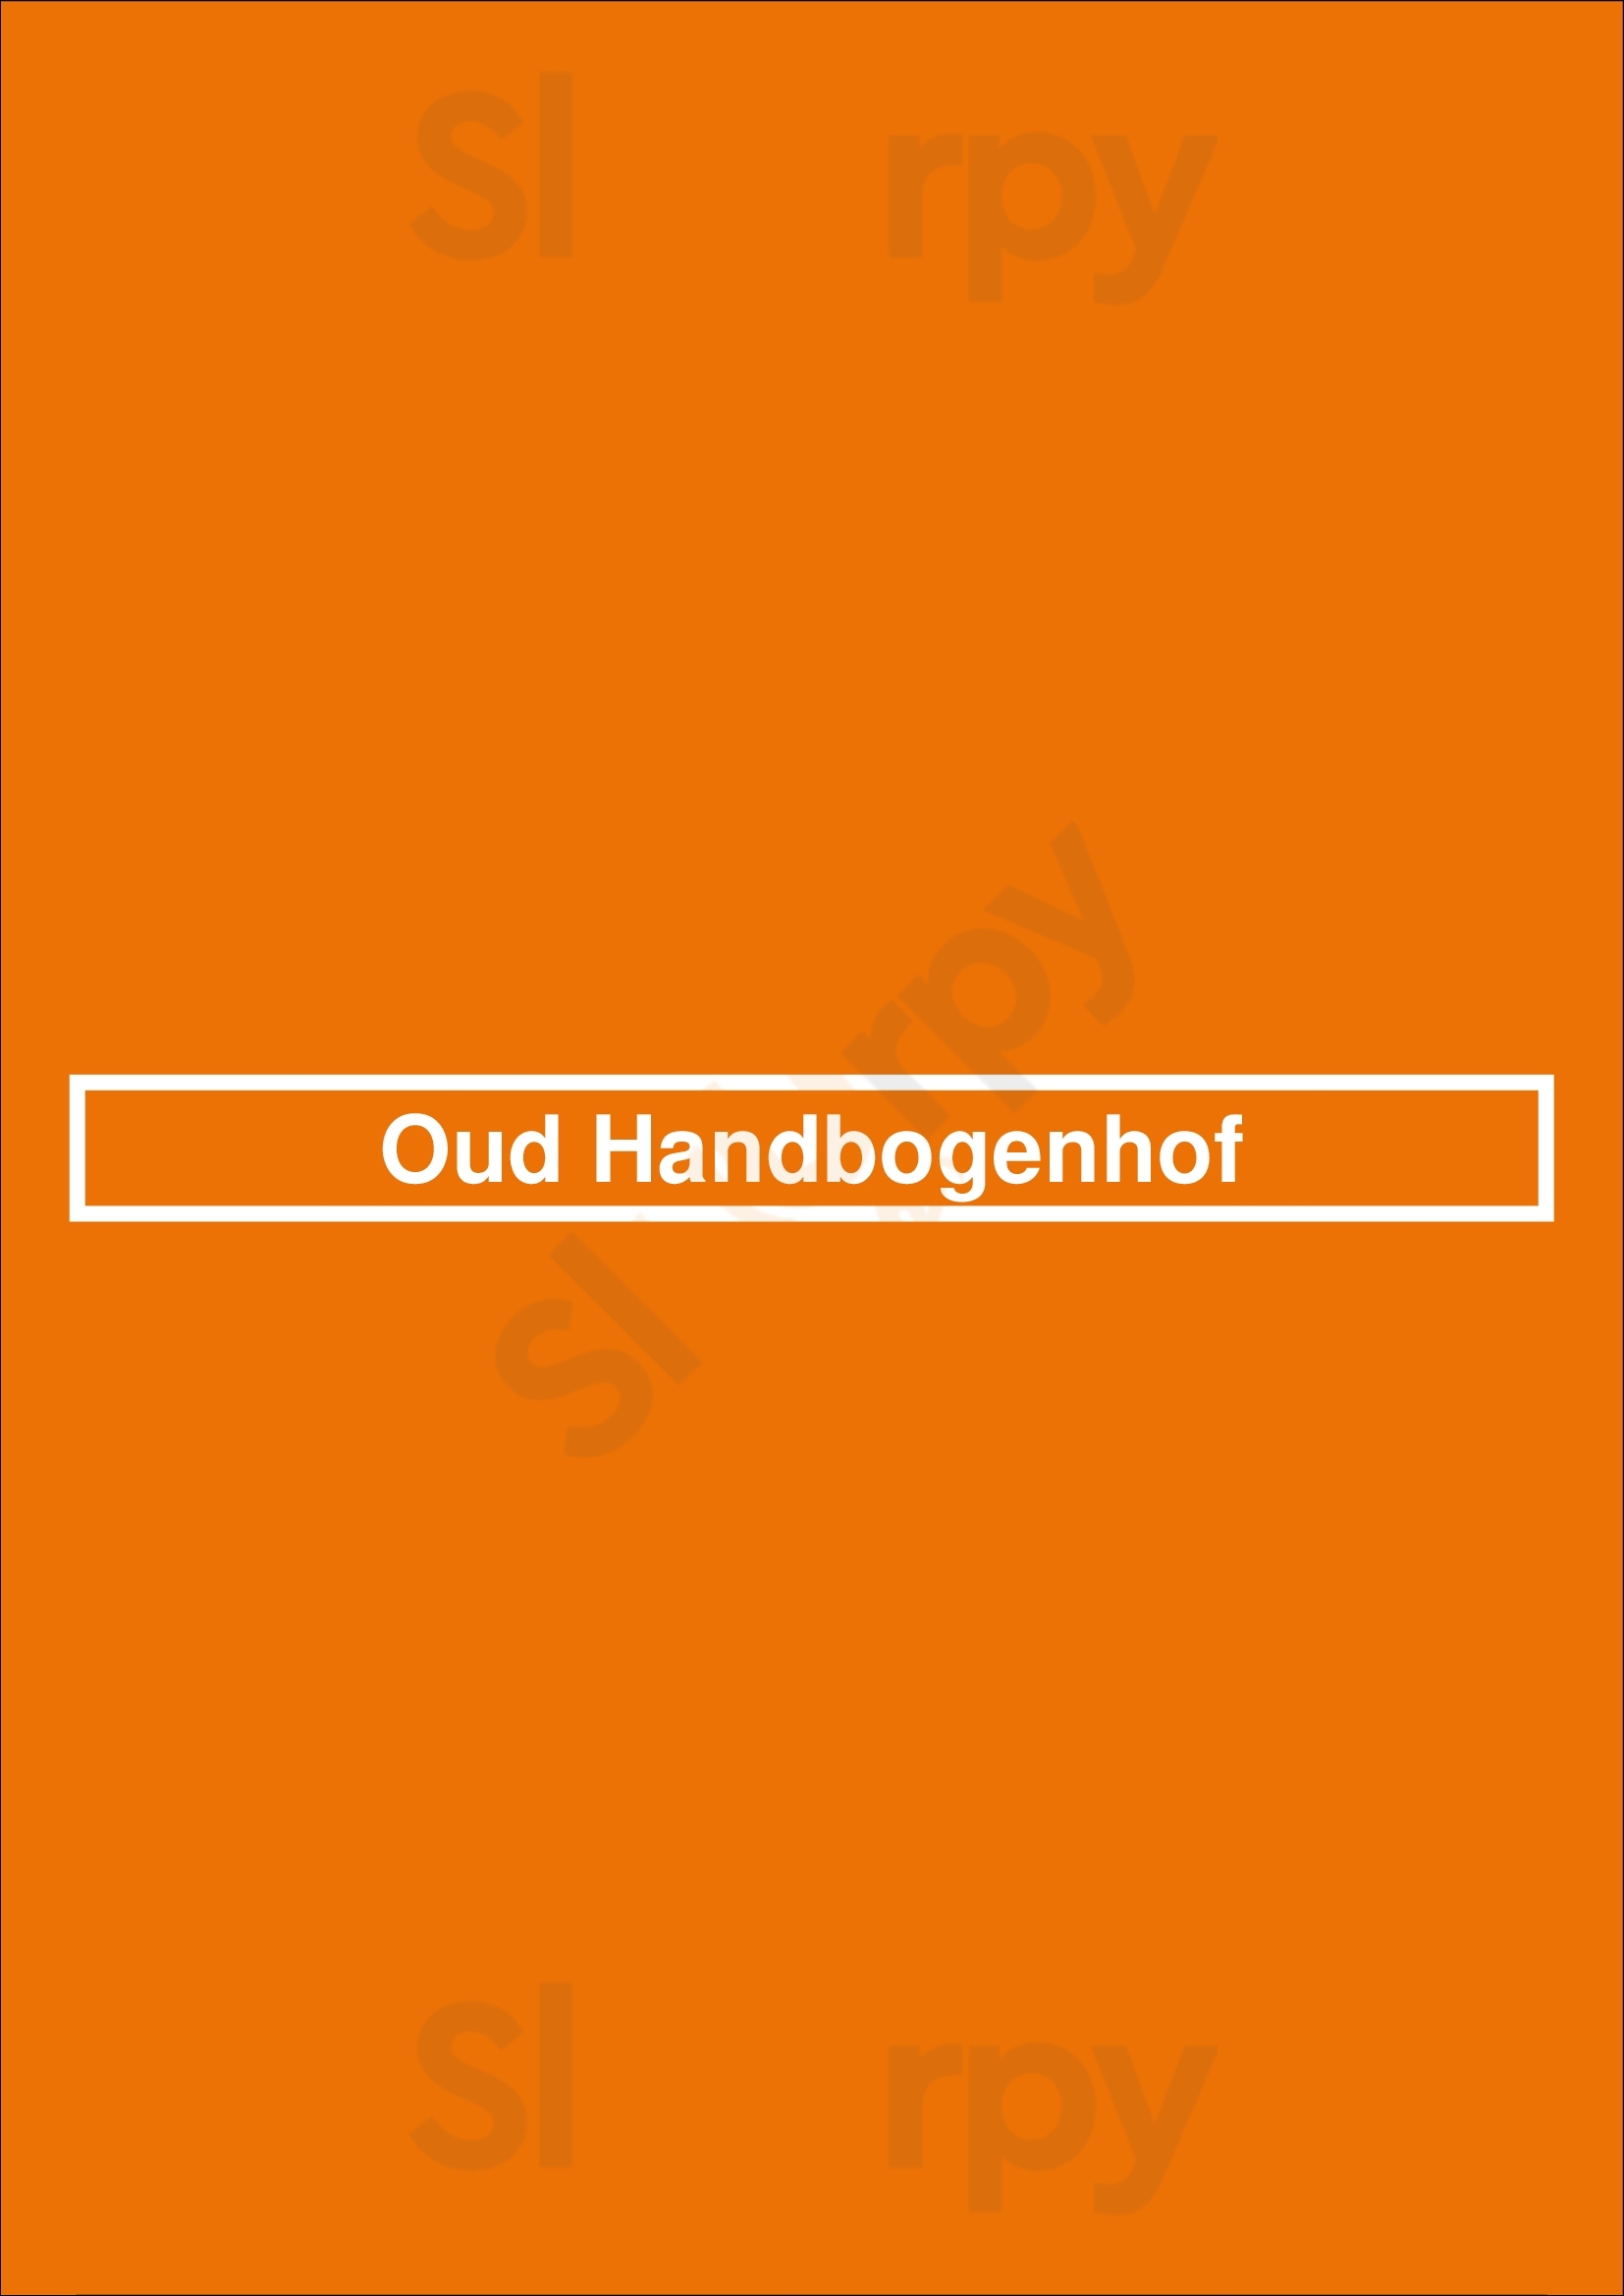 Oud Handbogenhof Bruges Menu - 1